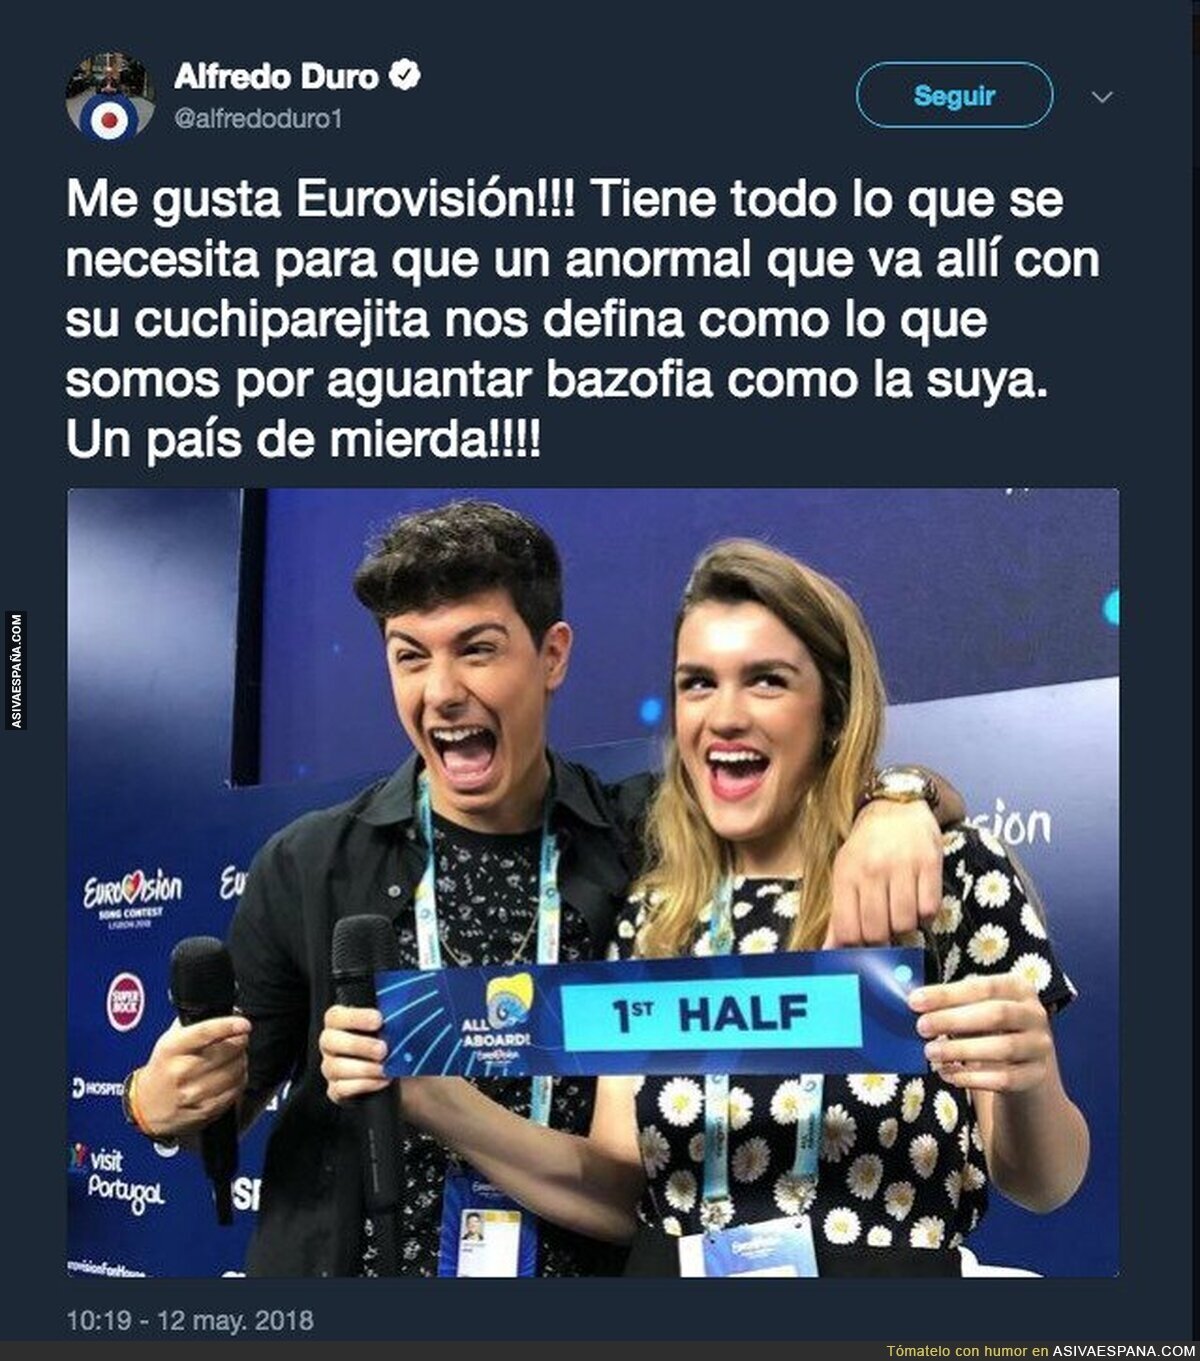 El polémico tuit de Alfredo Duro cargando contra Alfred horas antes de Eurovisión